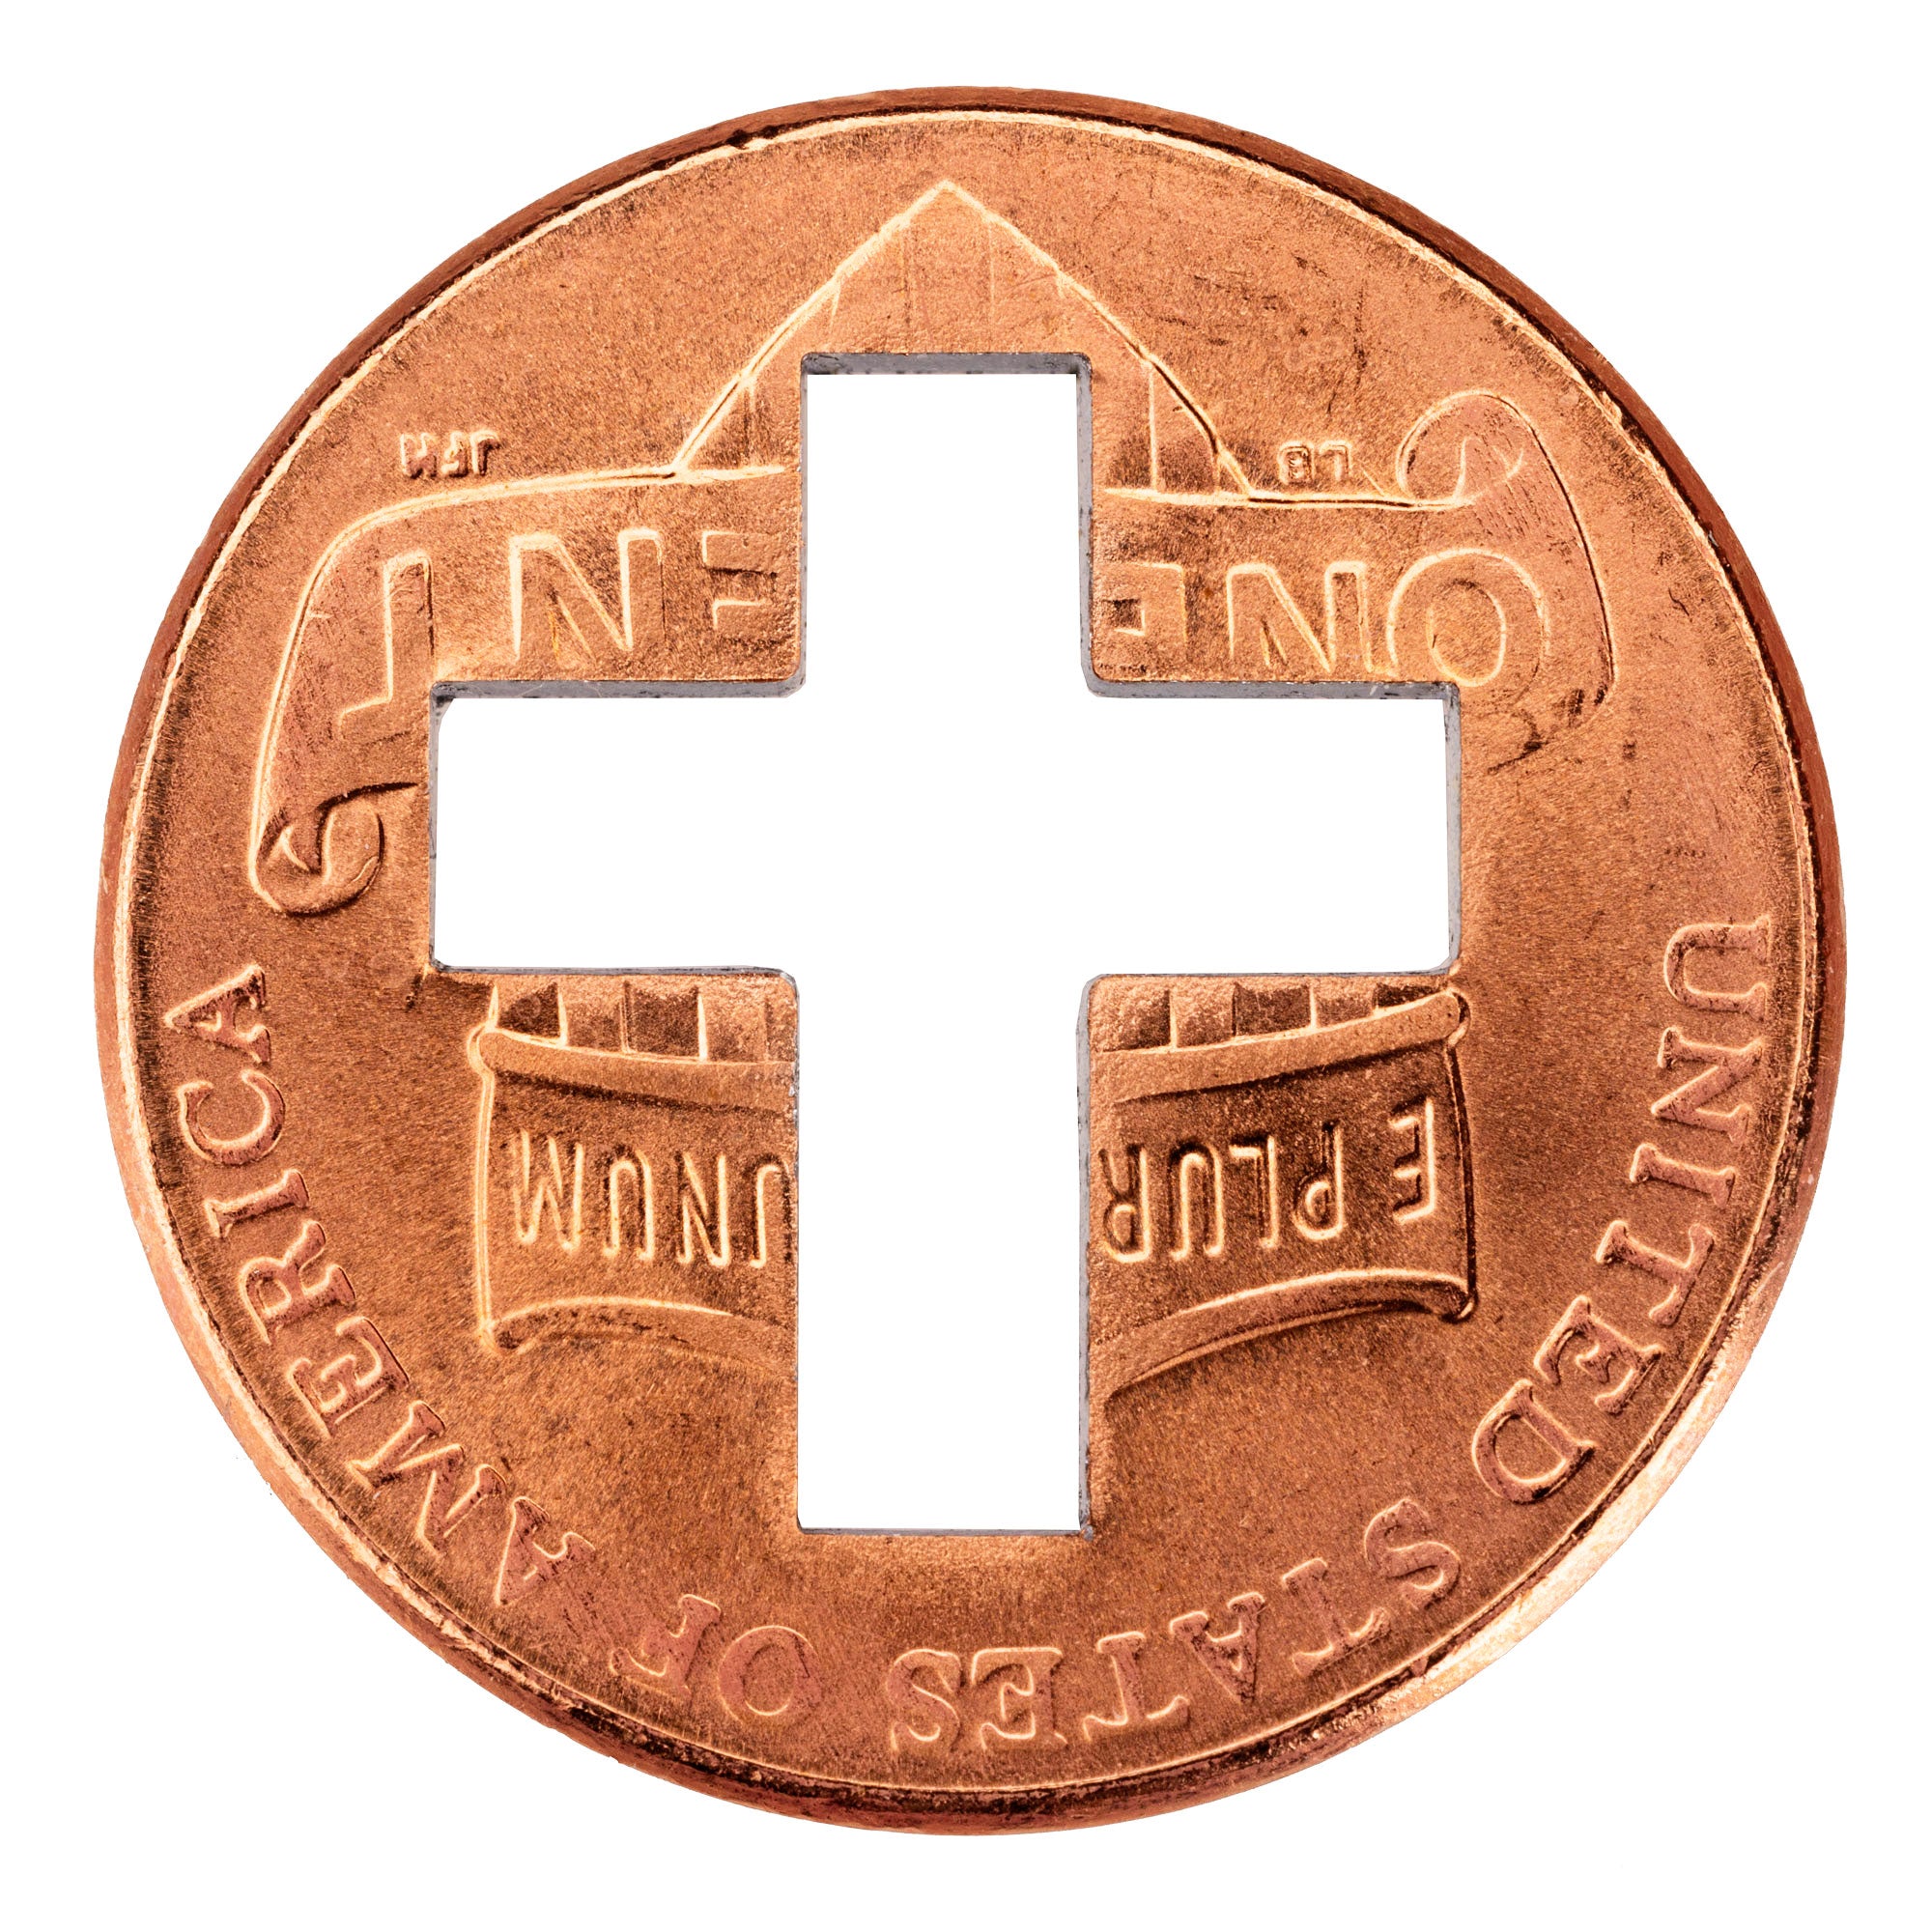 2023 Cross Pennies from Heaven Cross Penny